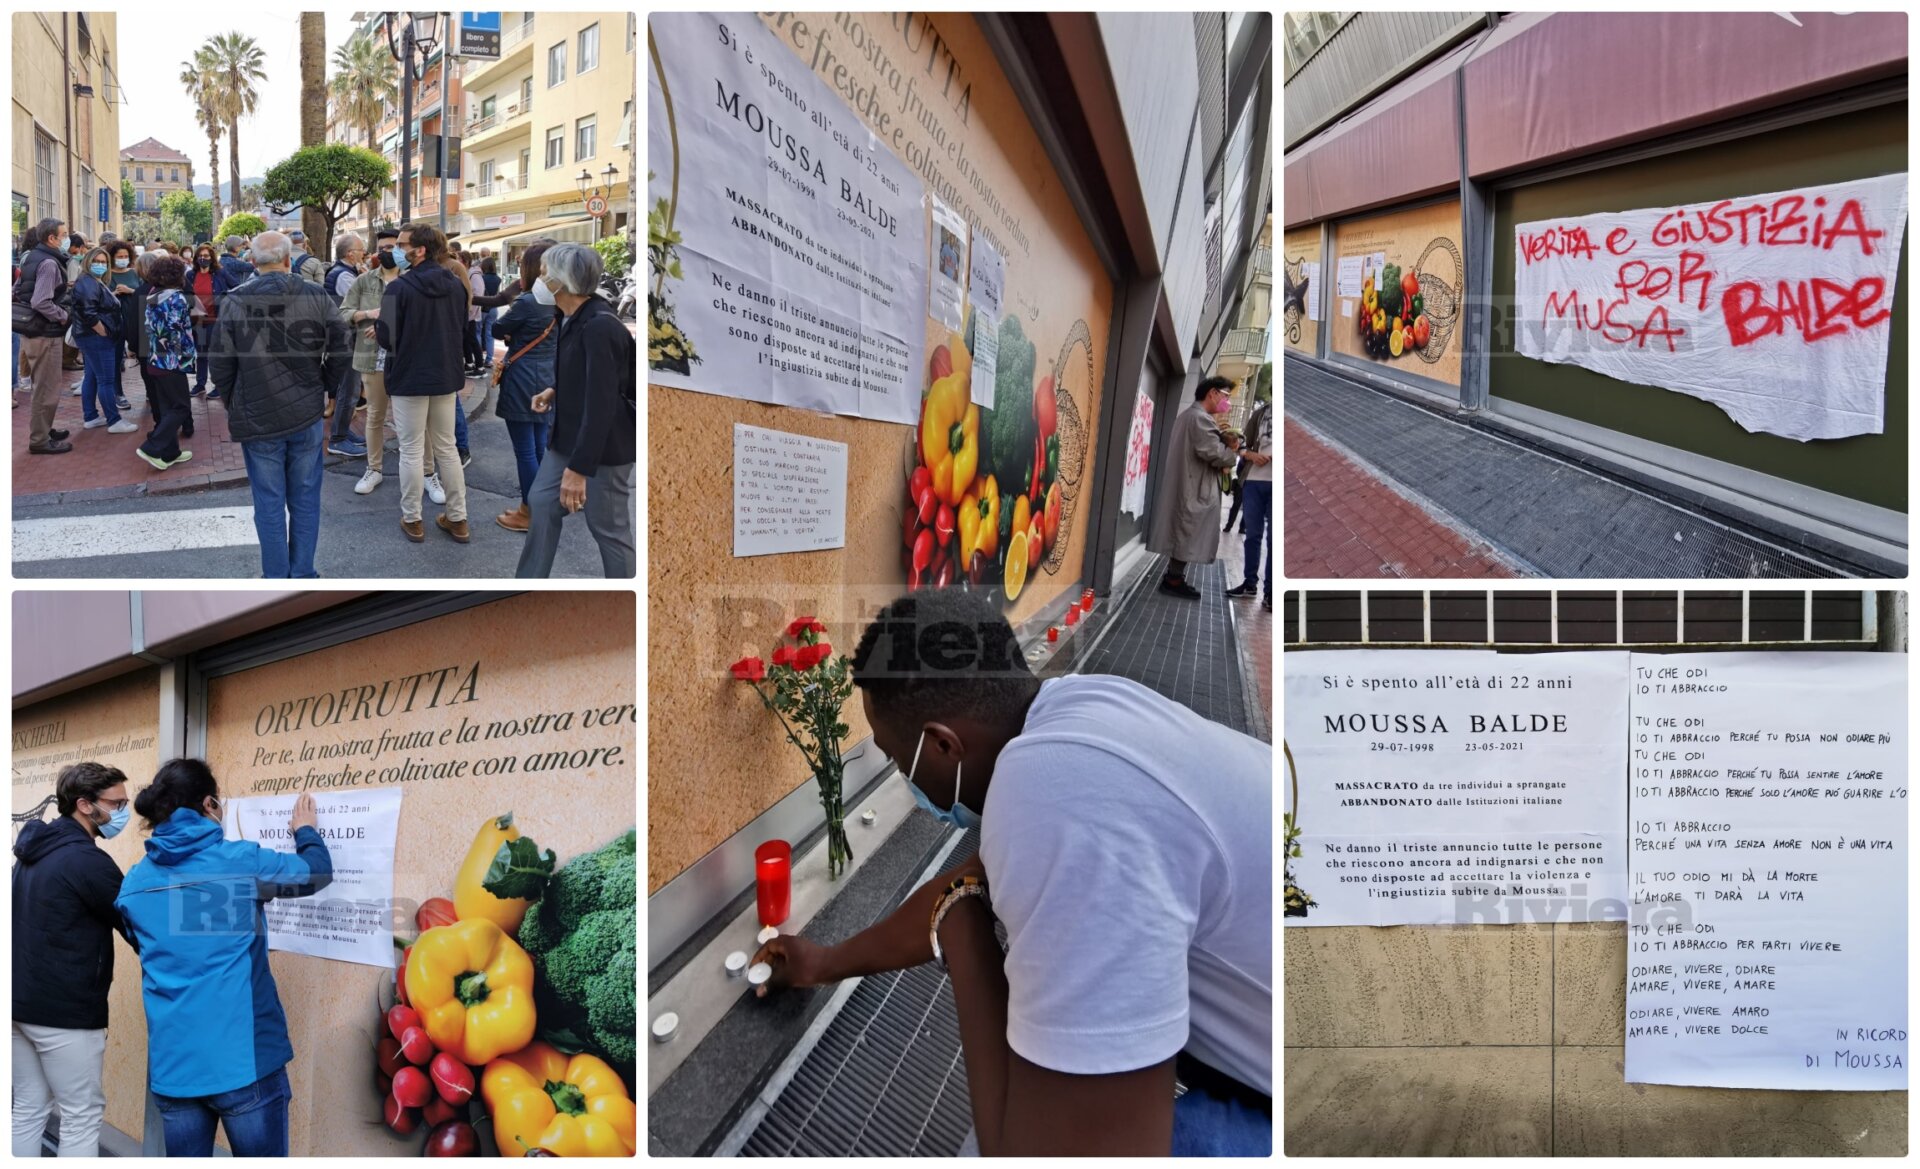 Moussa Balde flash mob migrante sprangate suicidio Cpr Torino collage